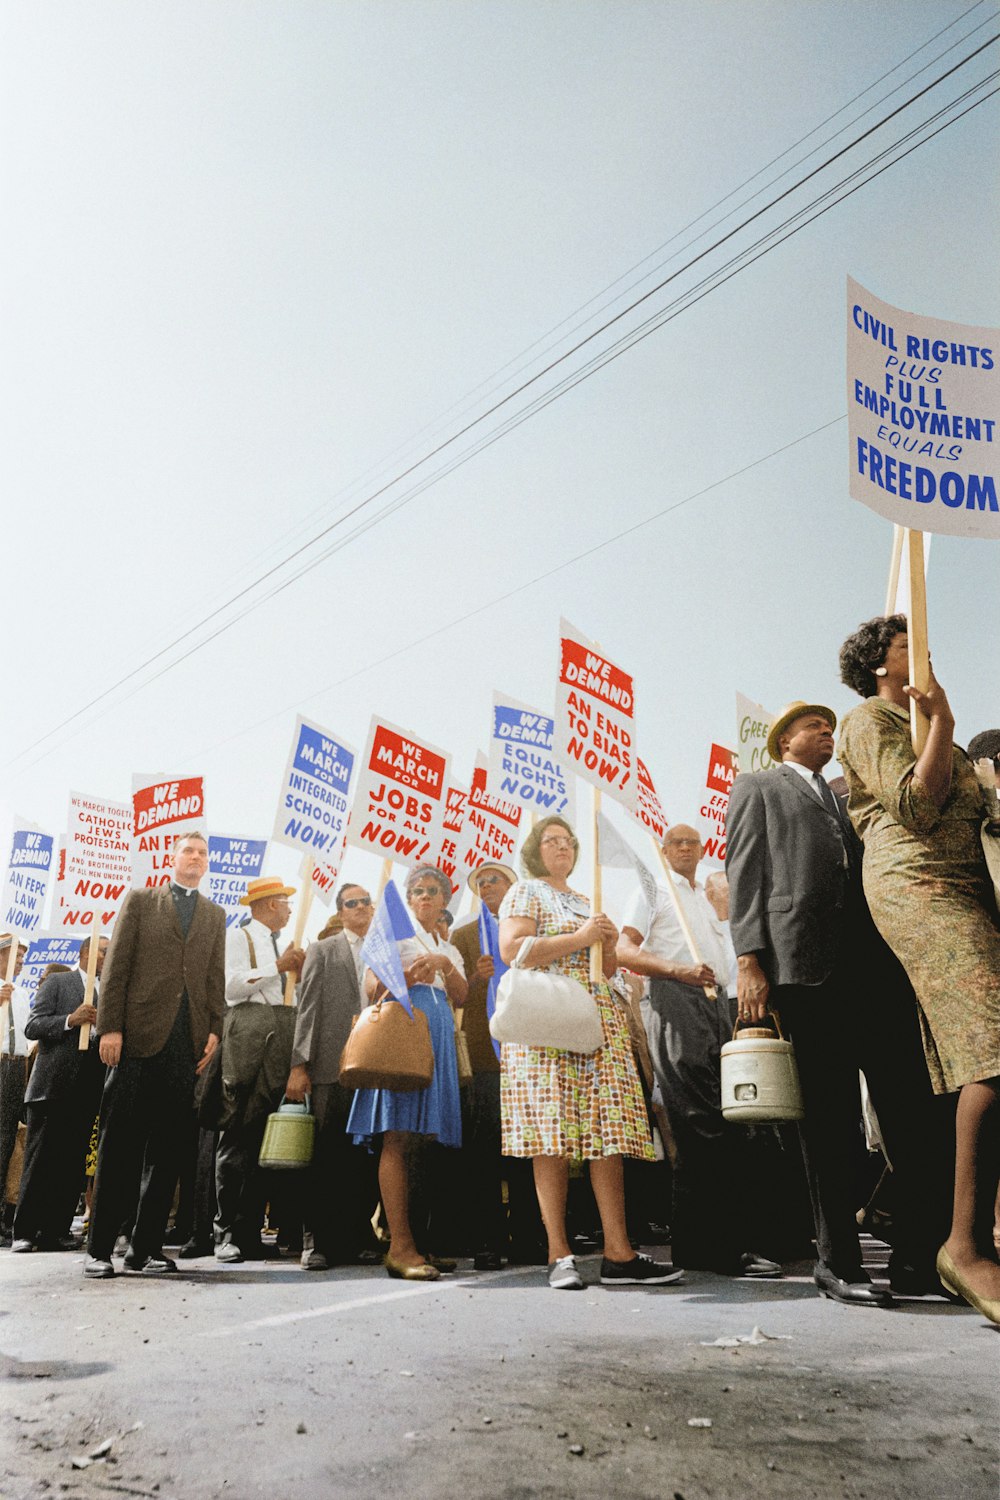 ワシントン大行進で投票権と平等な公民権を要求するプラカードを掲げるデモ参加者